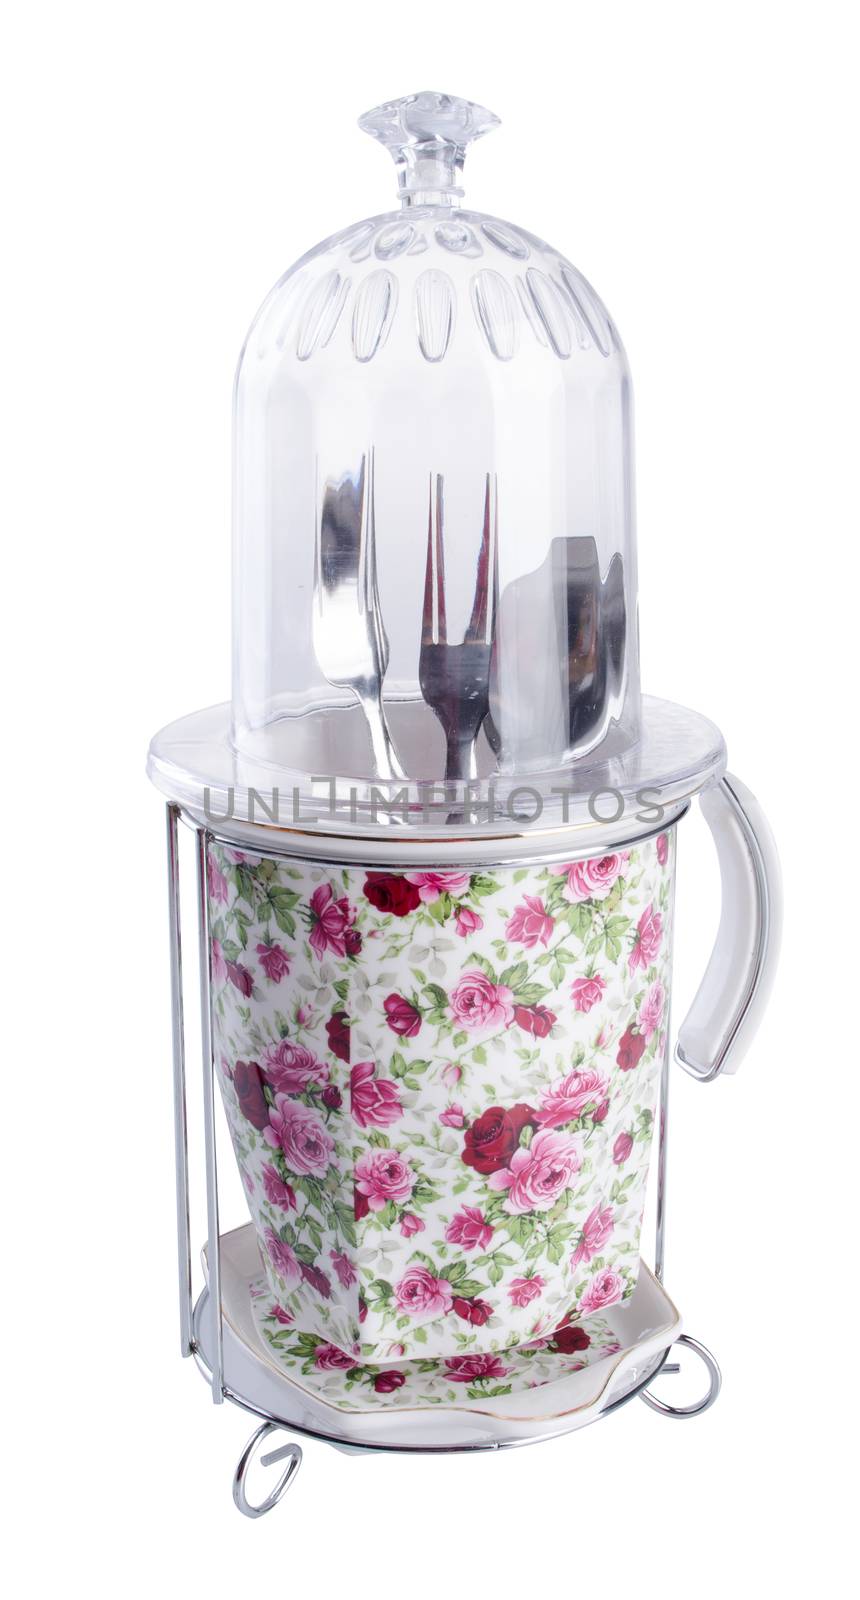 Kitchen utensils holder. Kitchen utensils holder on background. by heinteh